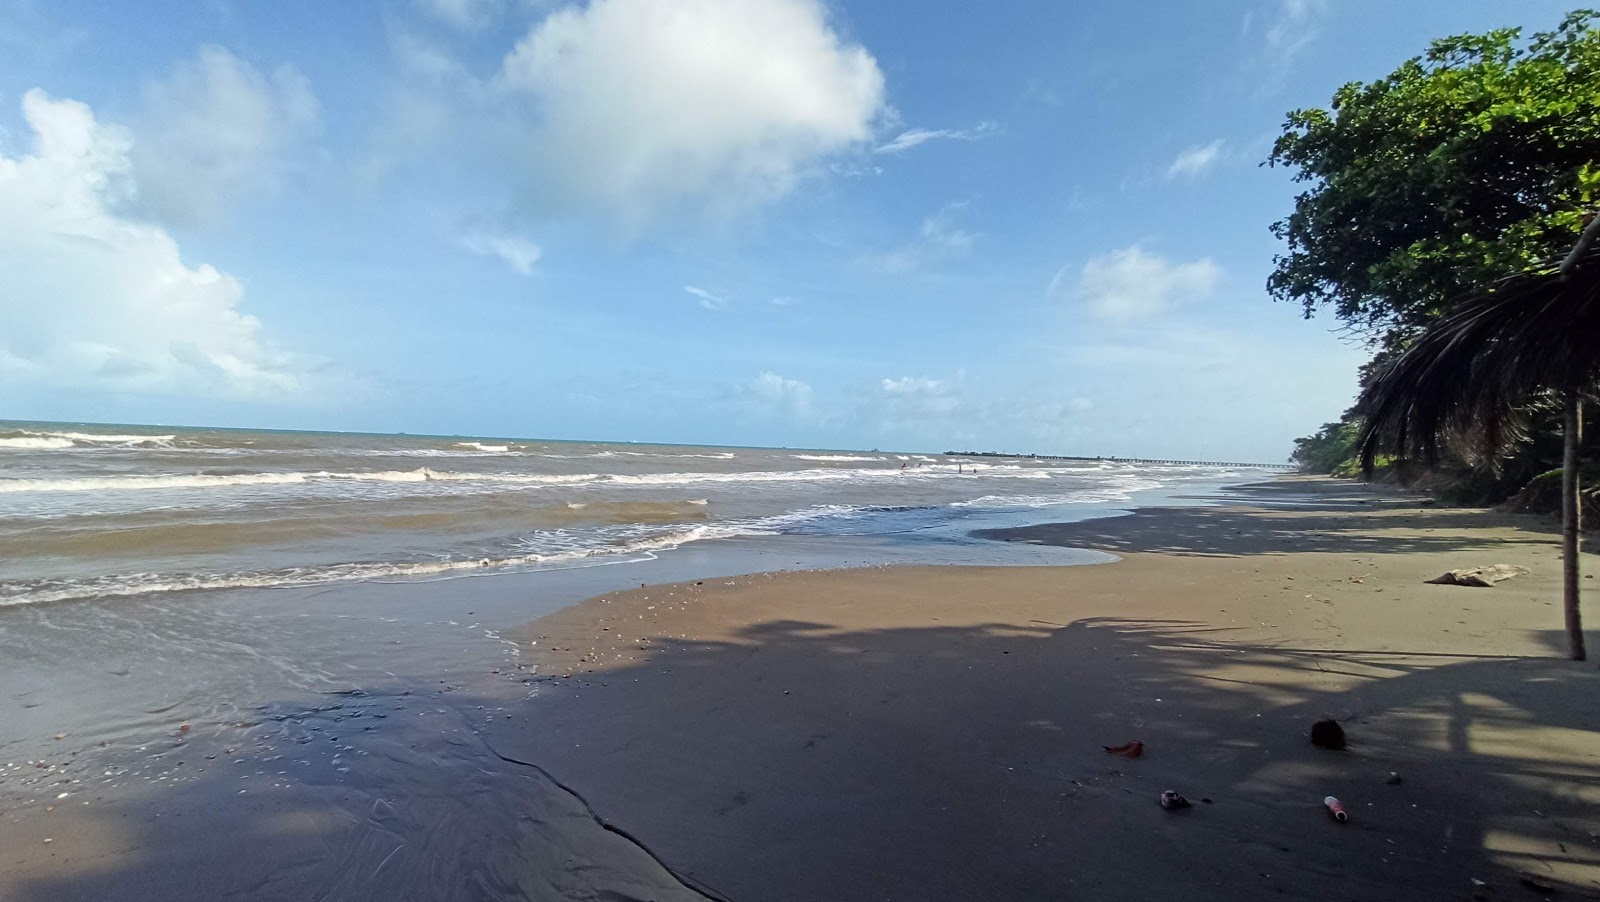 La Bocana 海滩的照片 具有非常干净级别的清洁度